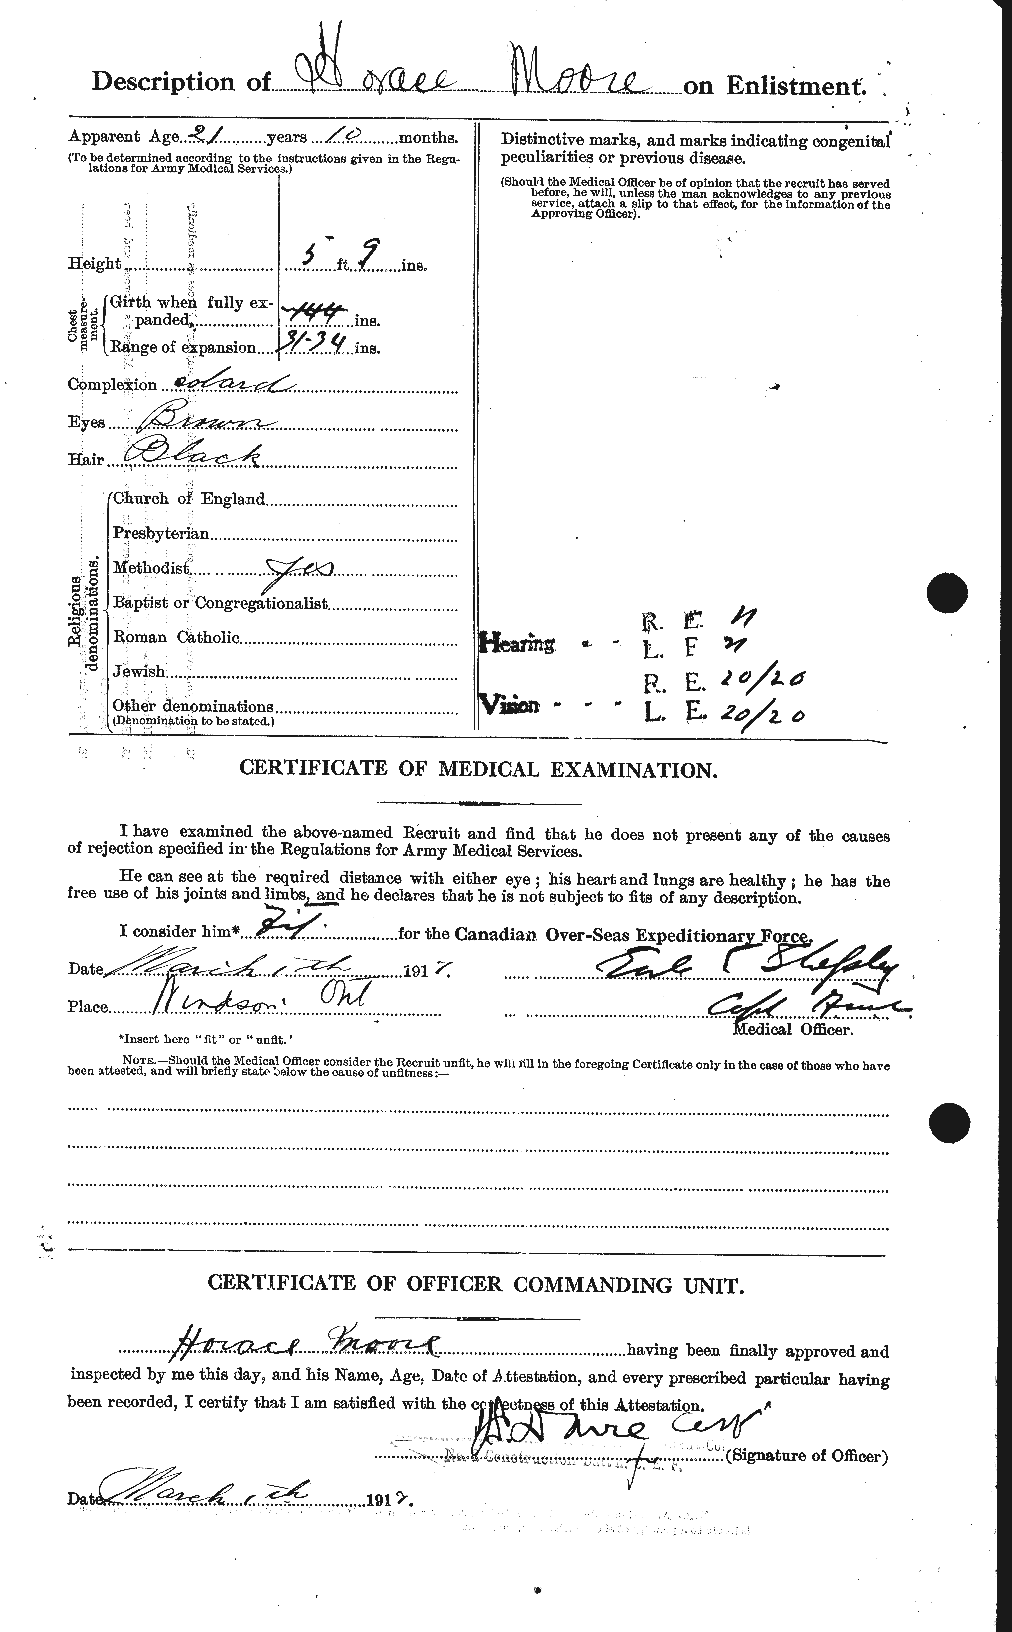 Dossiers du Personnel de la Première Guerre mondiale - CEC 502132b